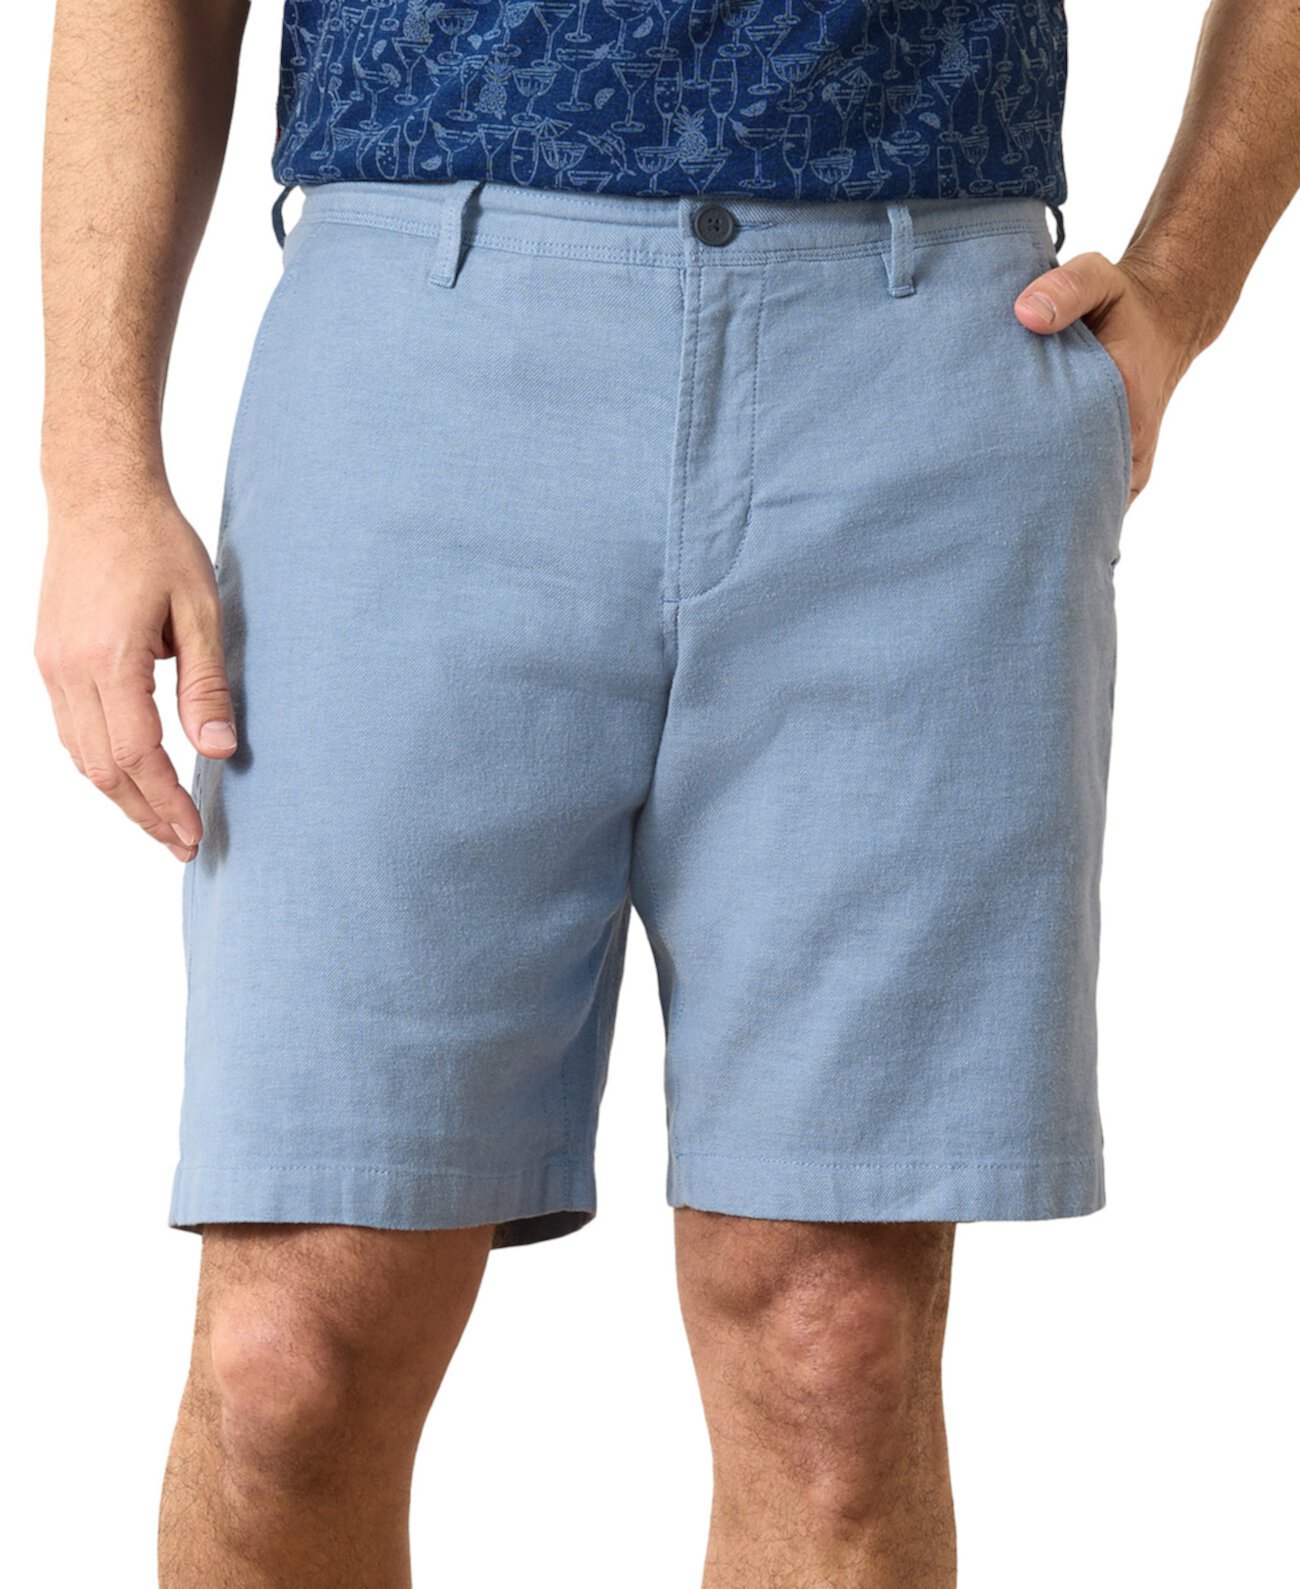 Мужские пляжные шорты 10 дюймов с плоской передней частью, окрашенные в пряже Tommy Bahama